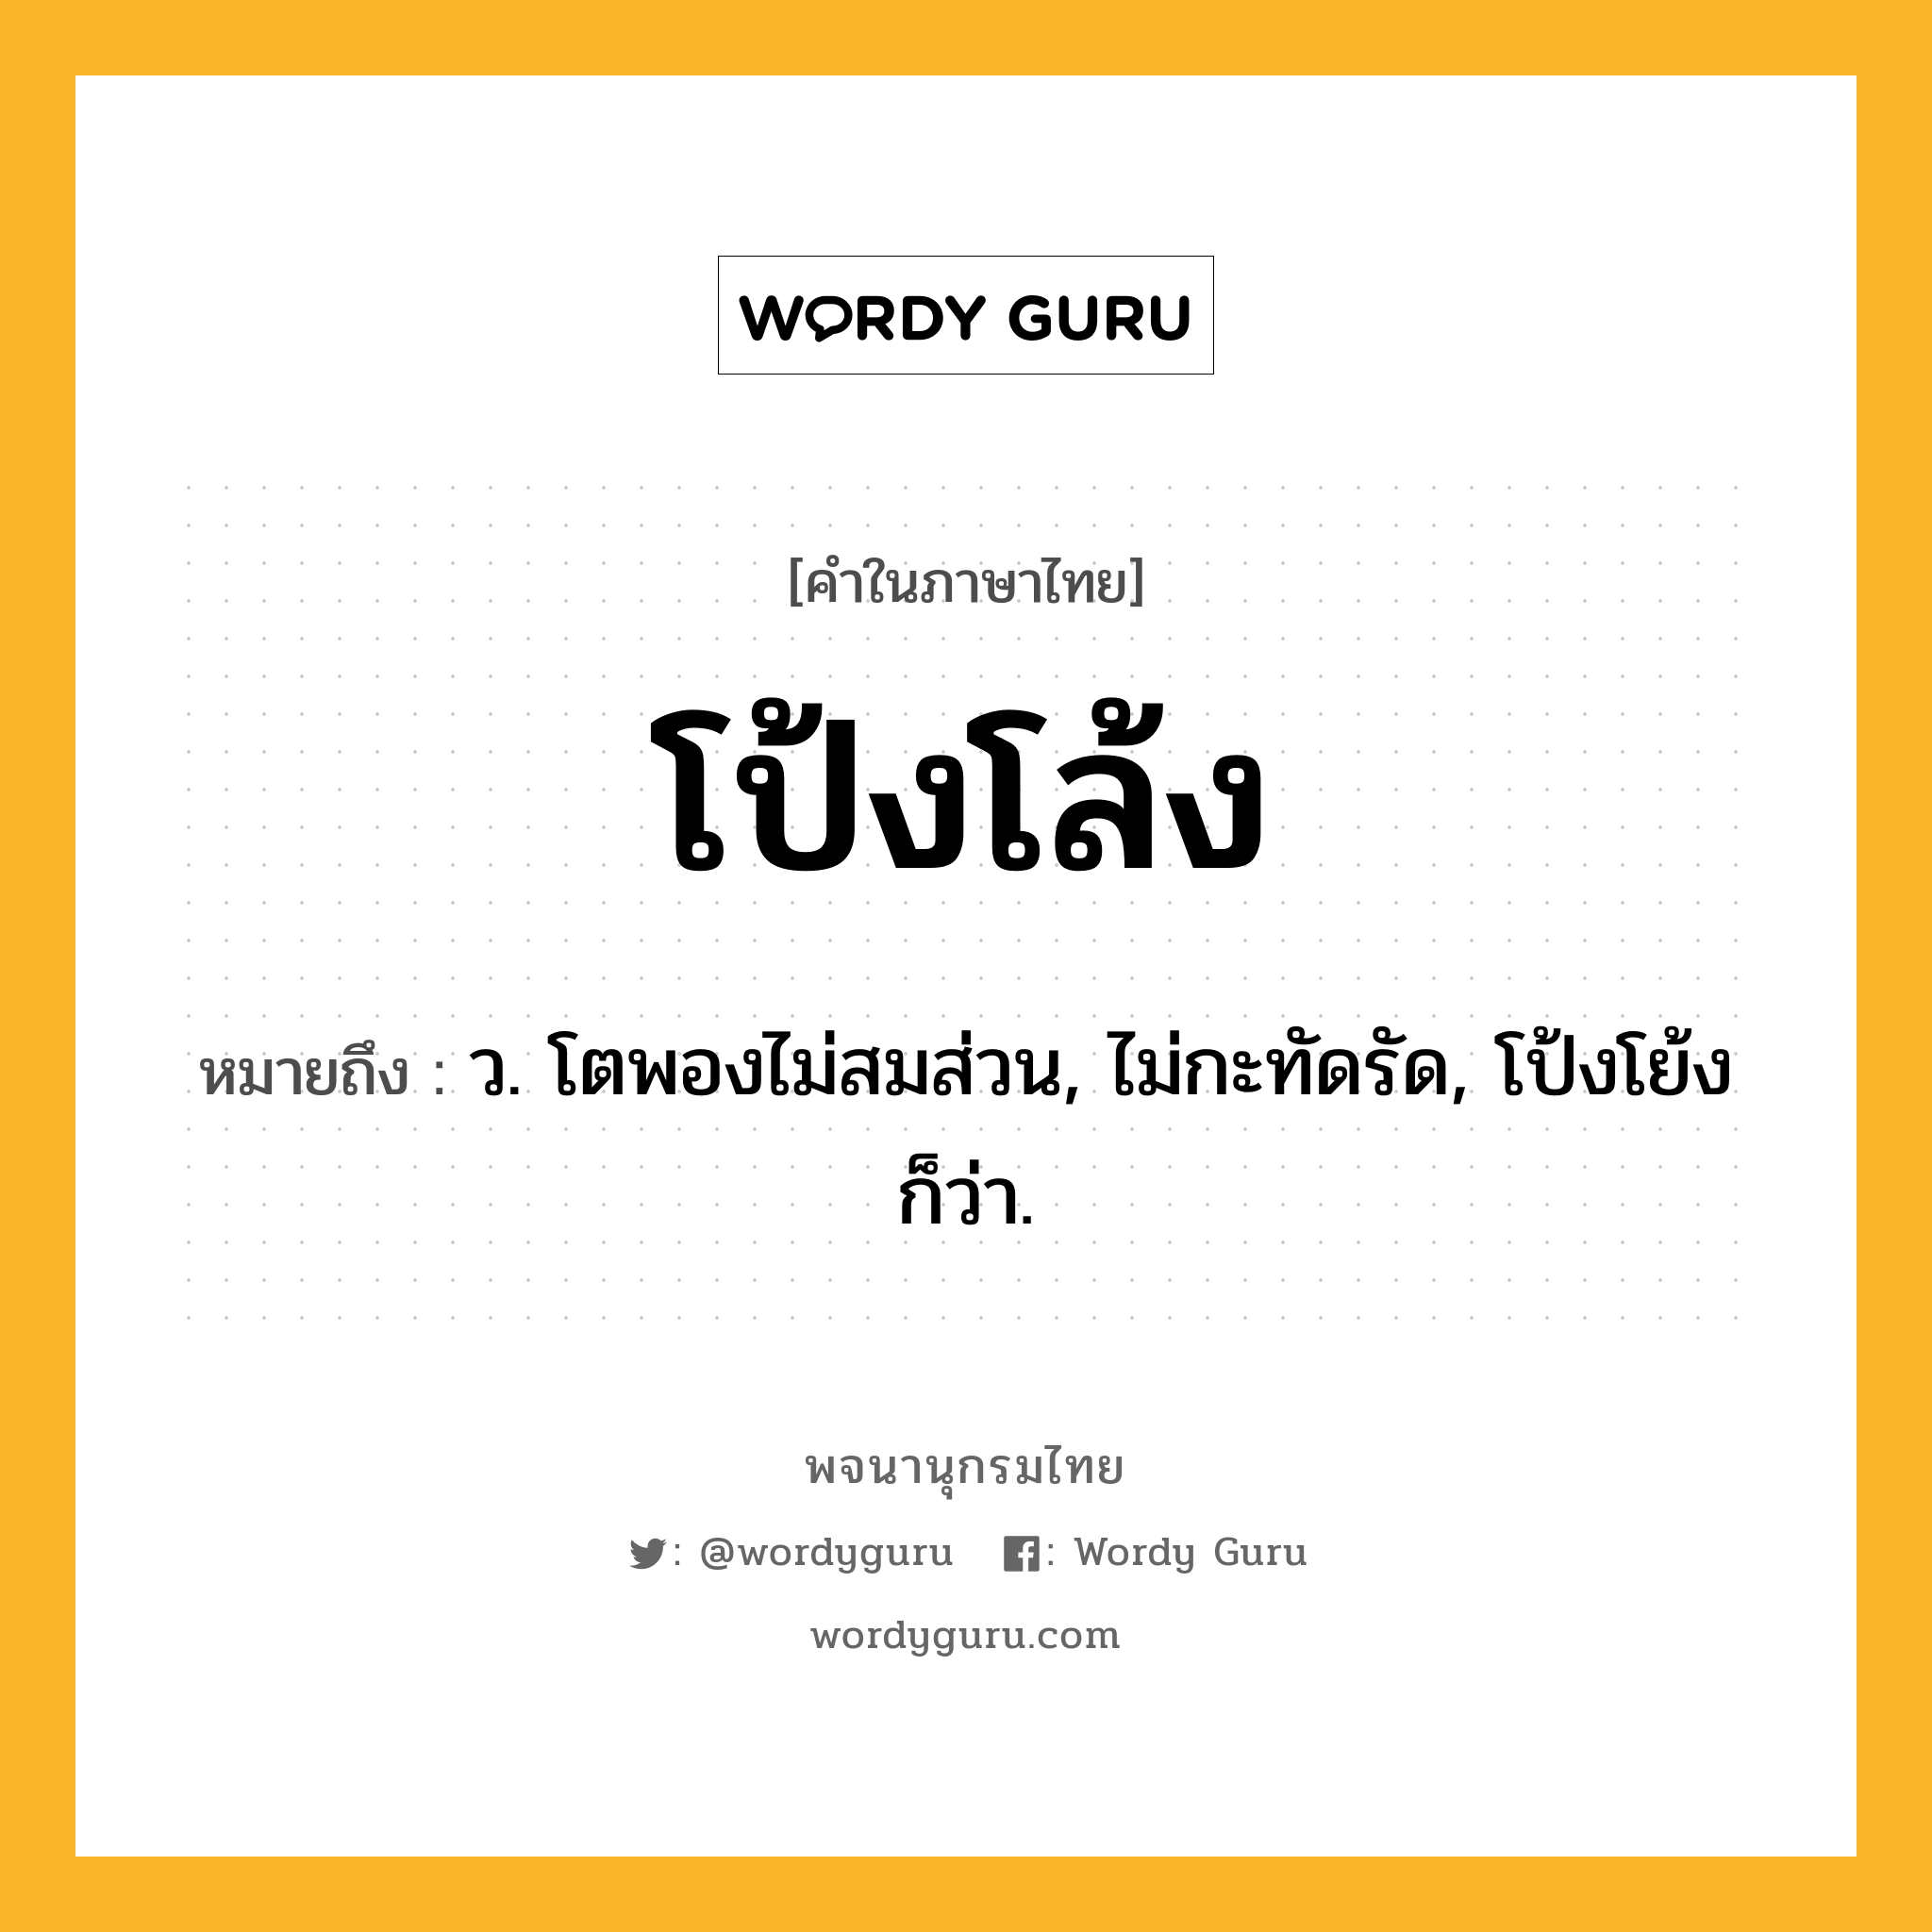 โป้งโล้ง ความหมาย หมายถึงอะไร?, คำในภาษาไทย โป้งโล้ง หมายถึง ว. โตพองไม่สมส่วน, ไม่กะทัดรัด, โป้งโย้ง ก็ว่า.